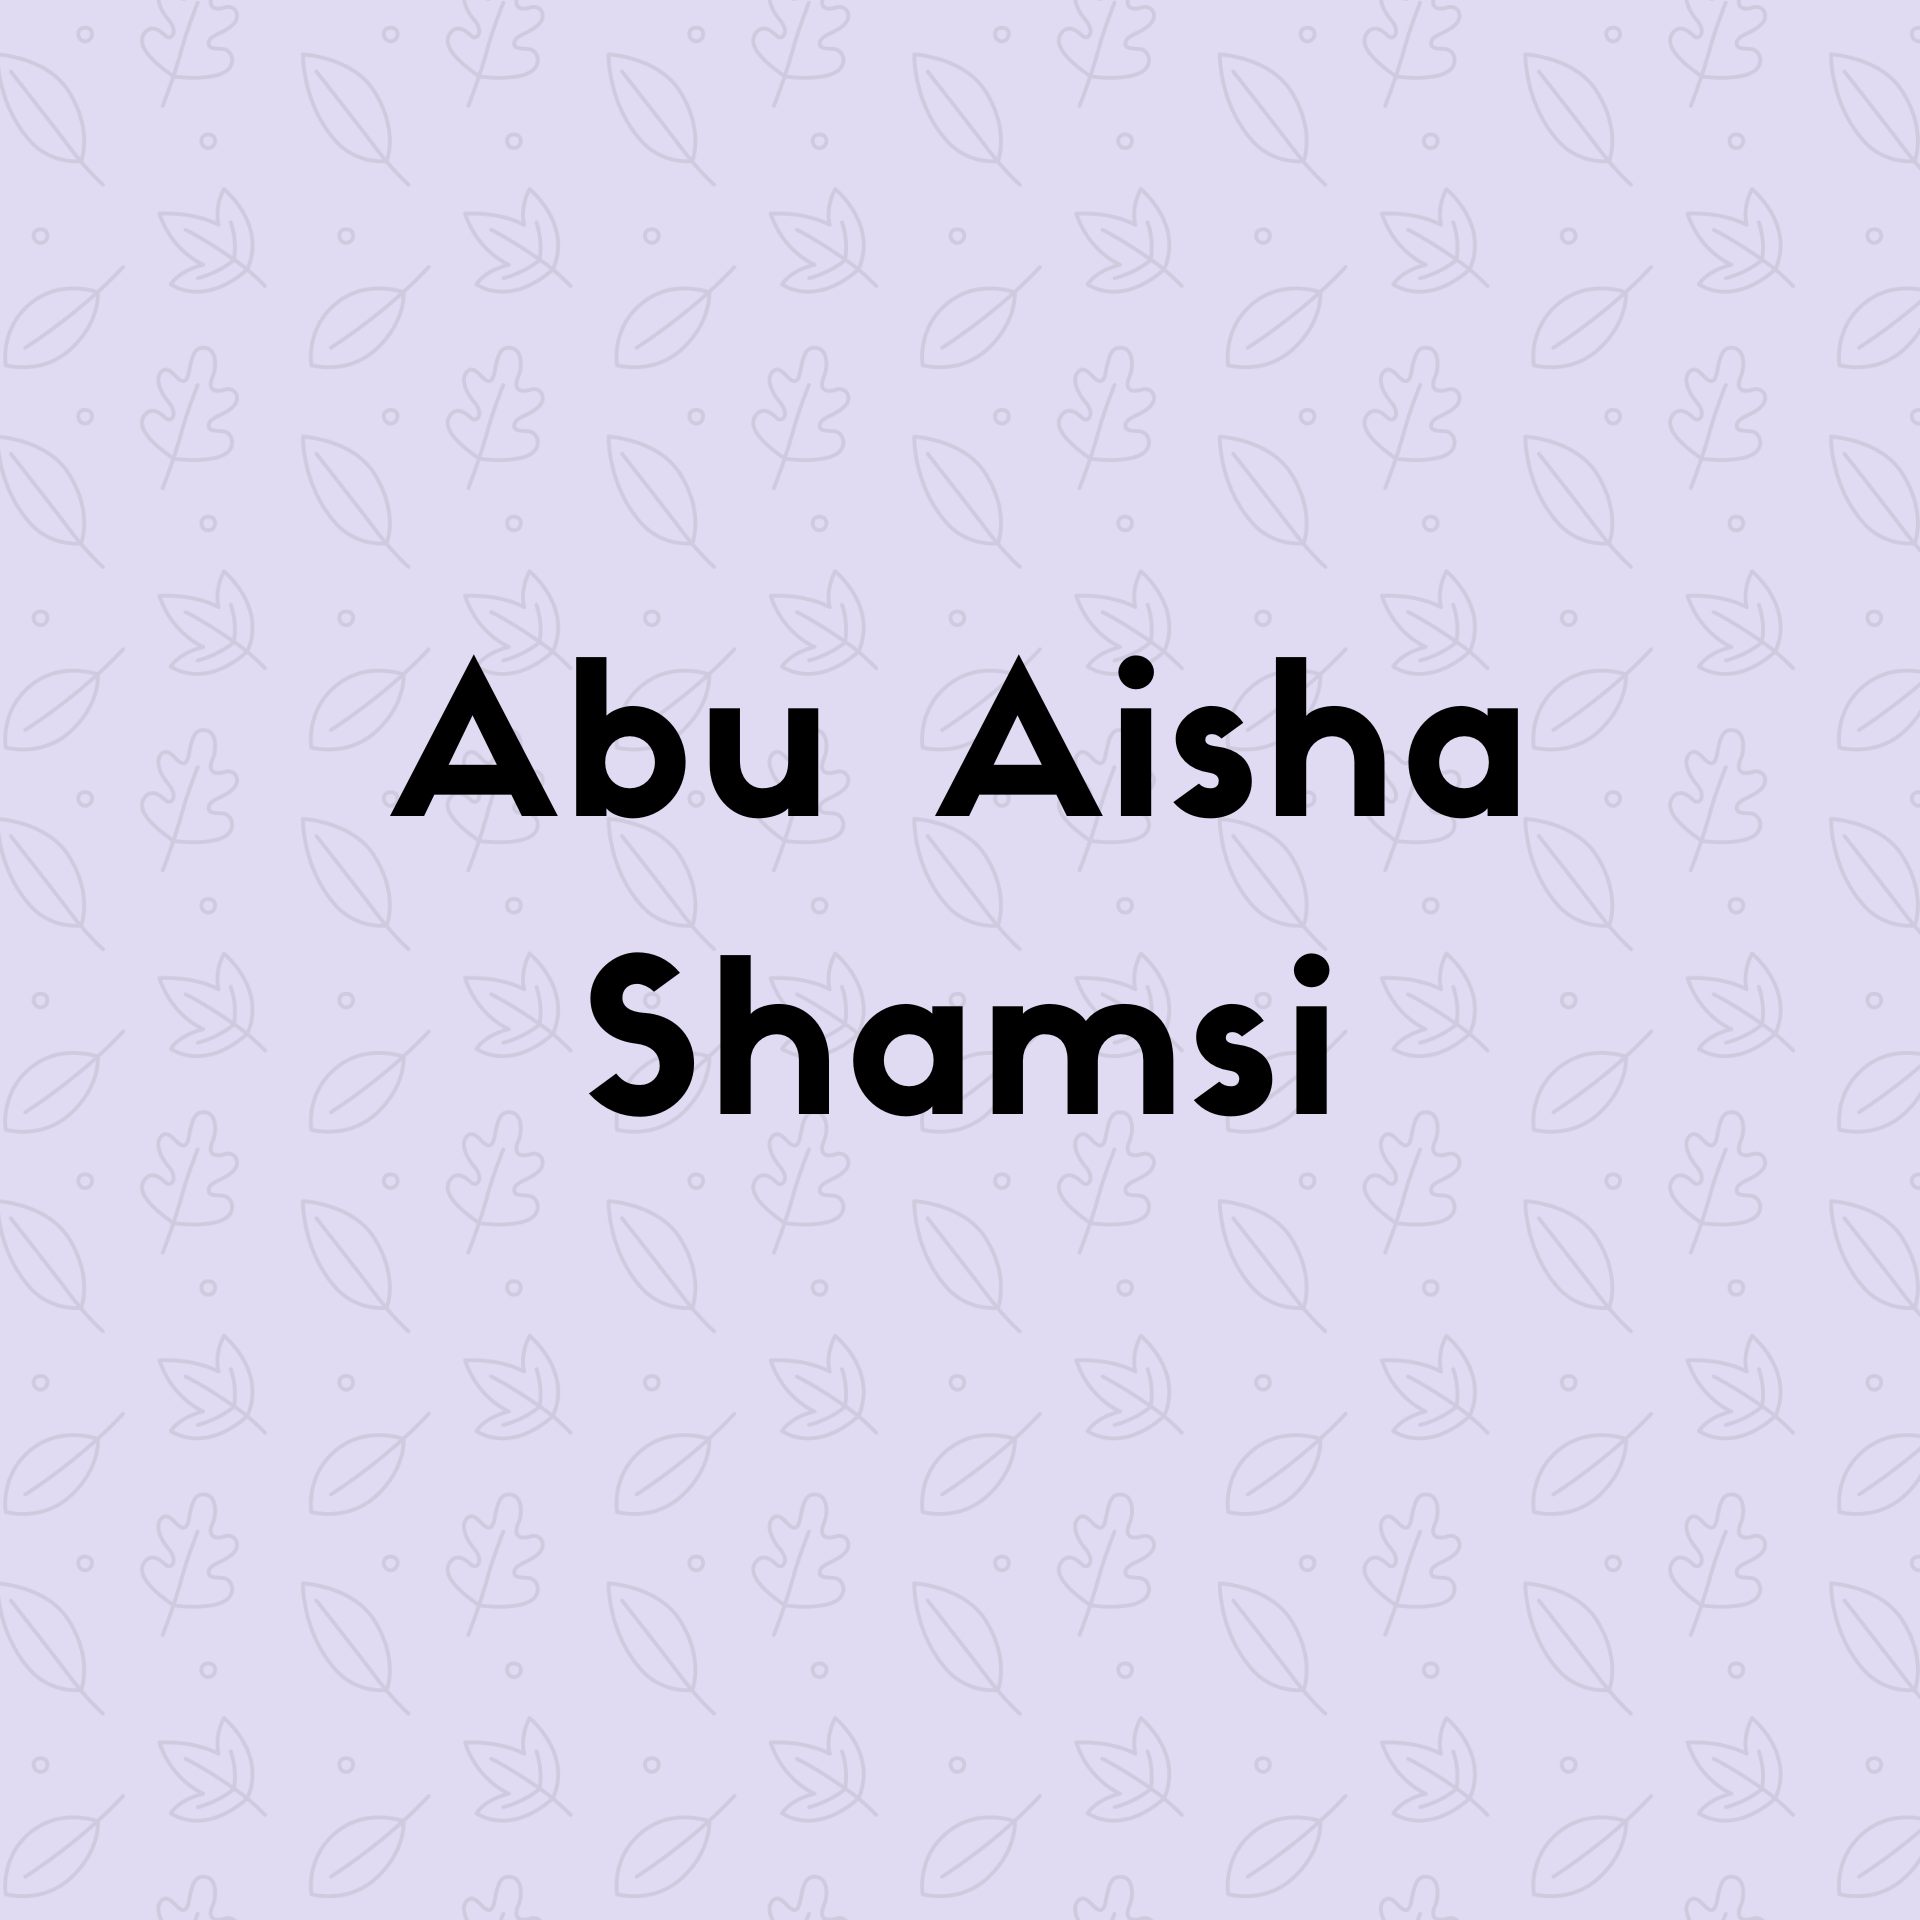  Abu Aisha Shamsi